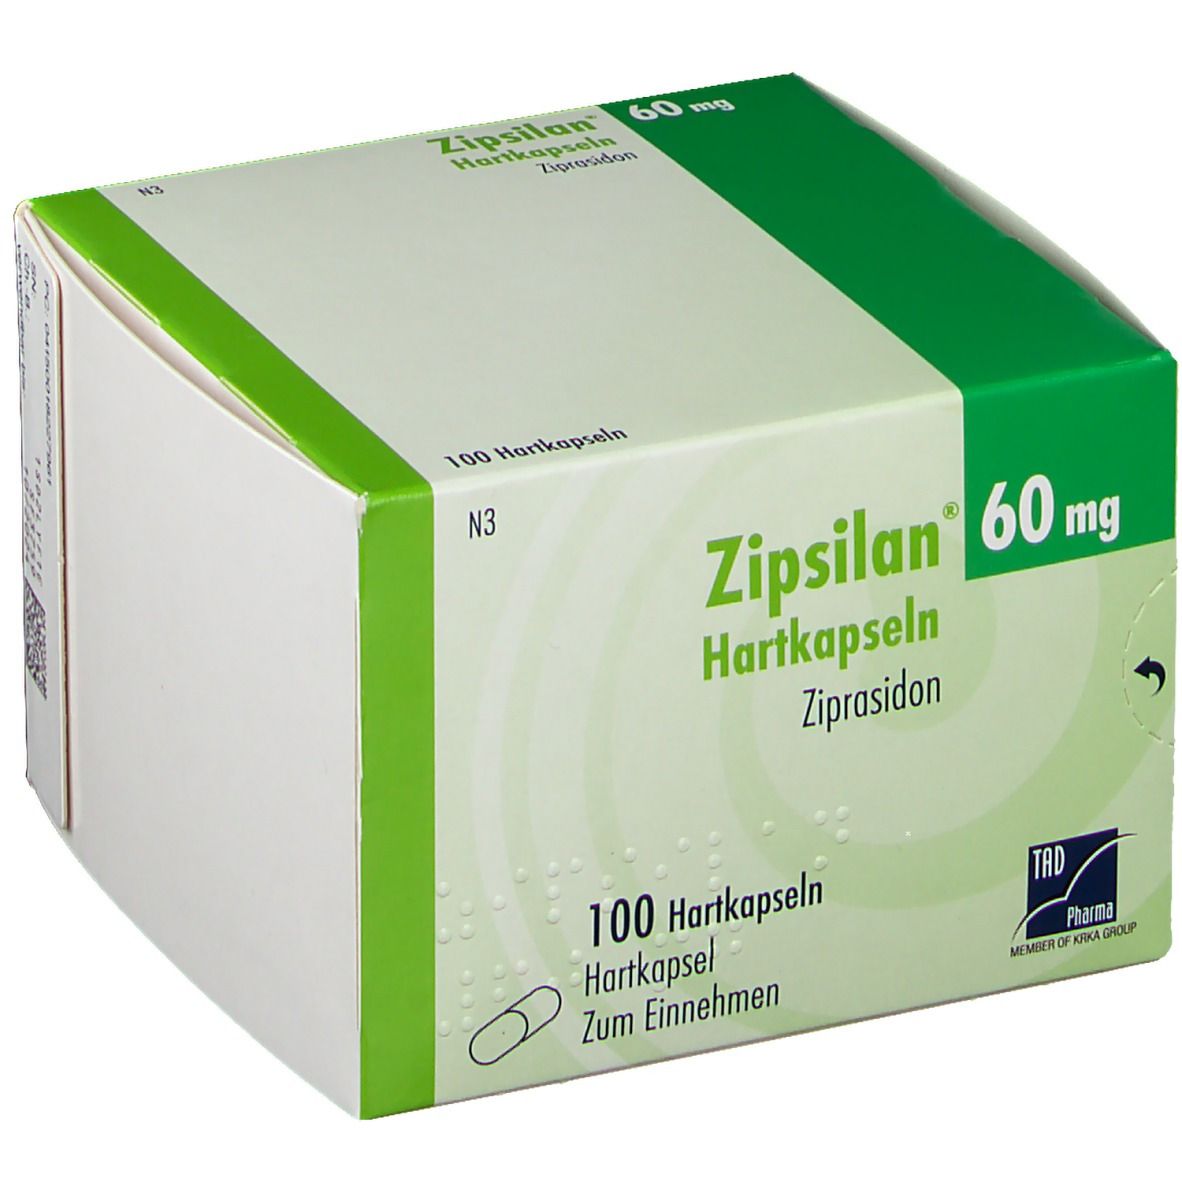 Zipsilan® 60 mg